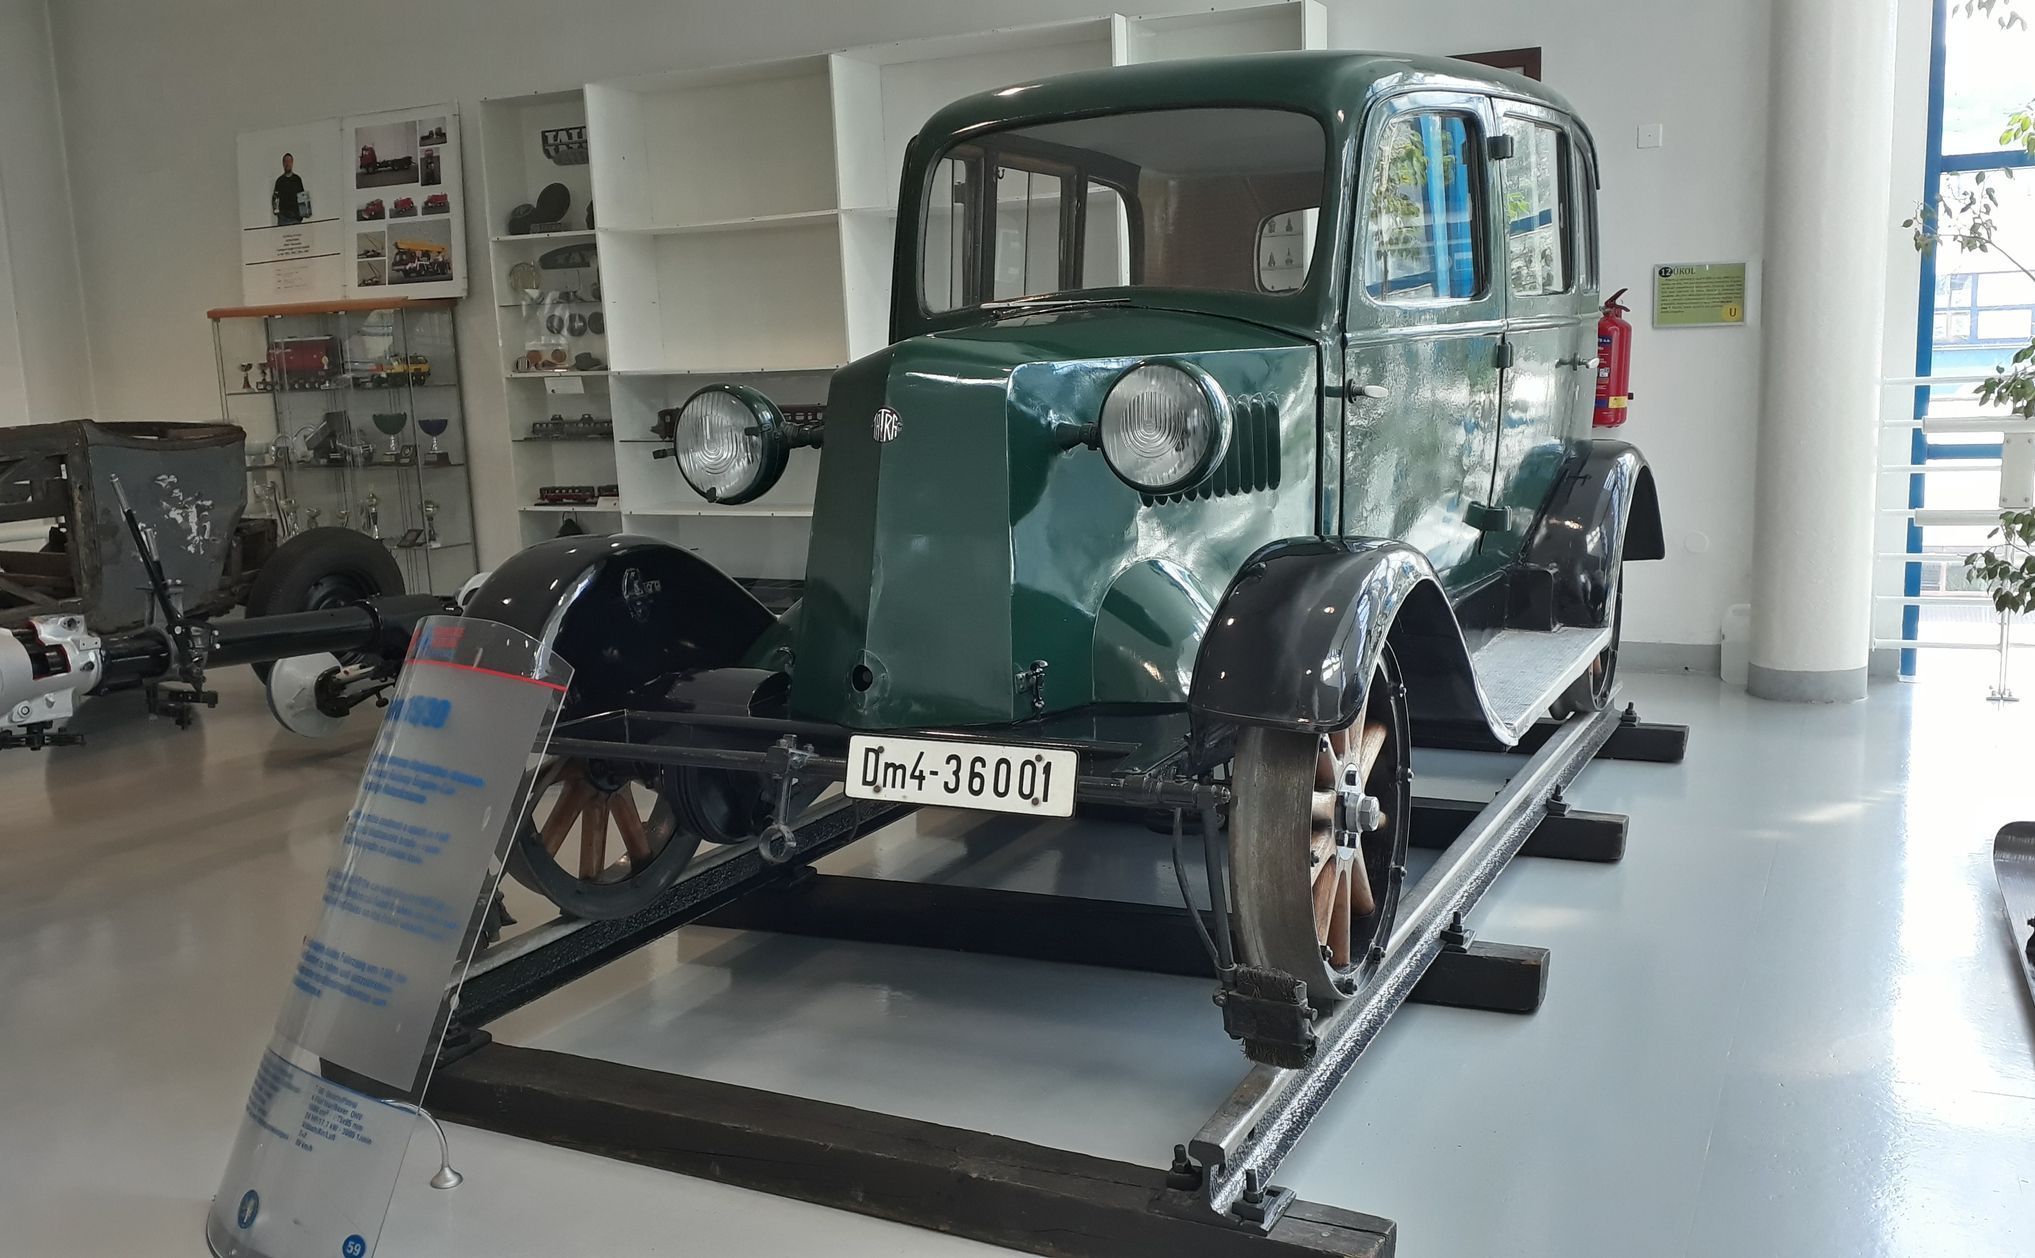 Tatra muzeum - upravené